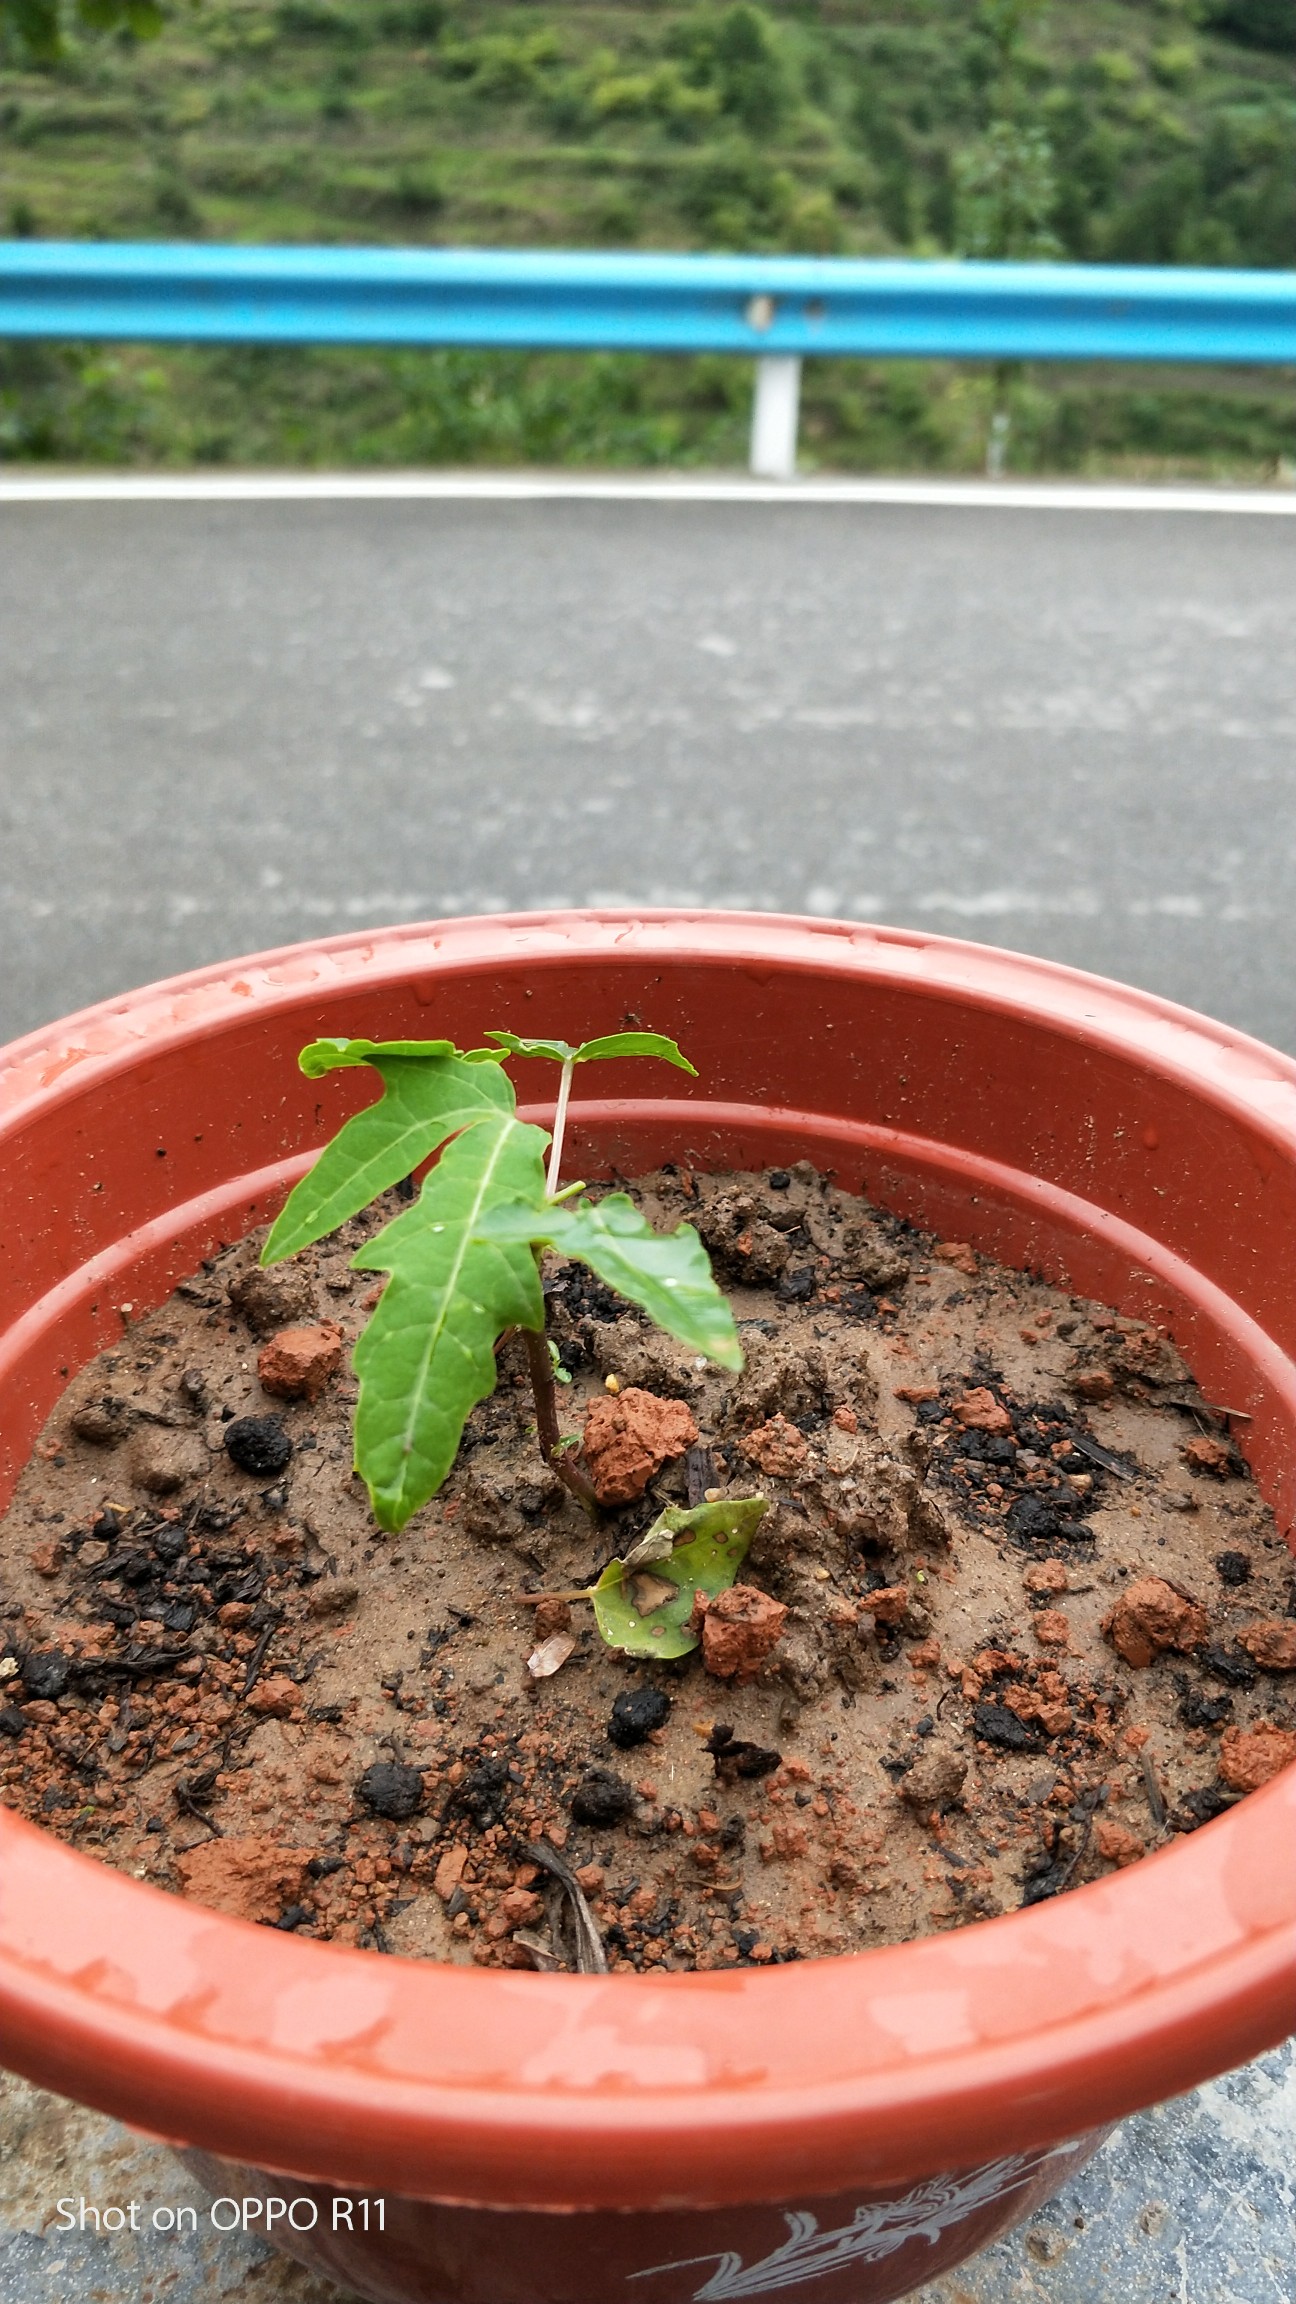 木瓜树幼苗图片图片